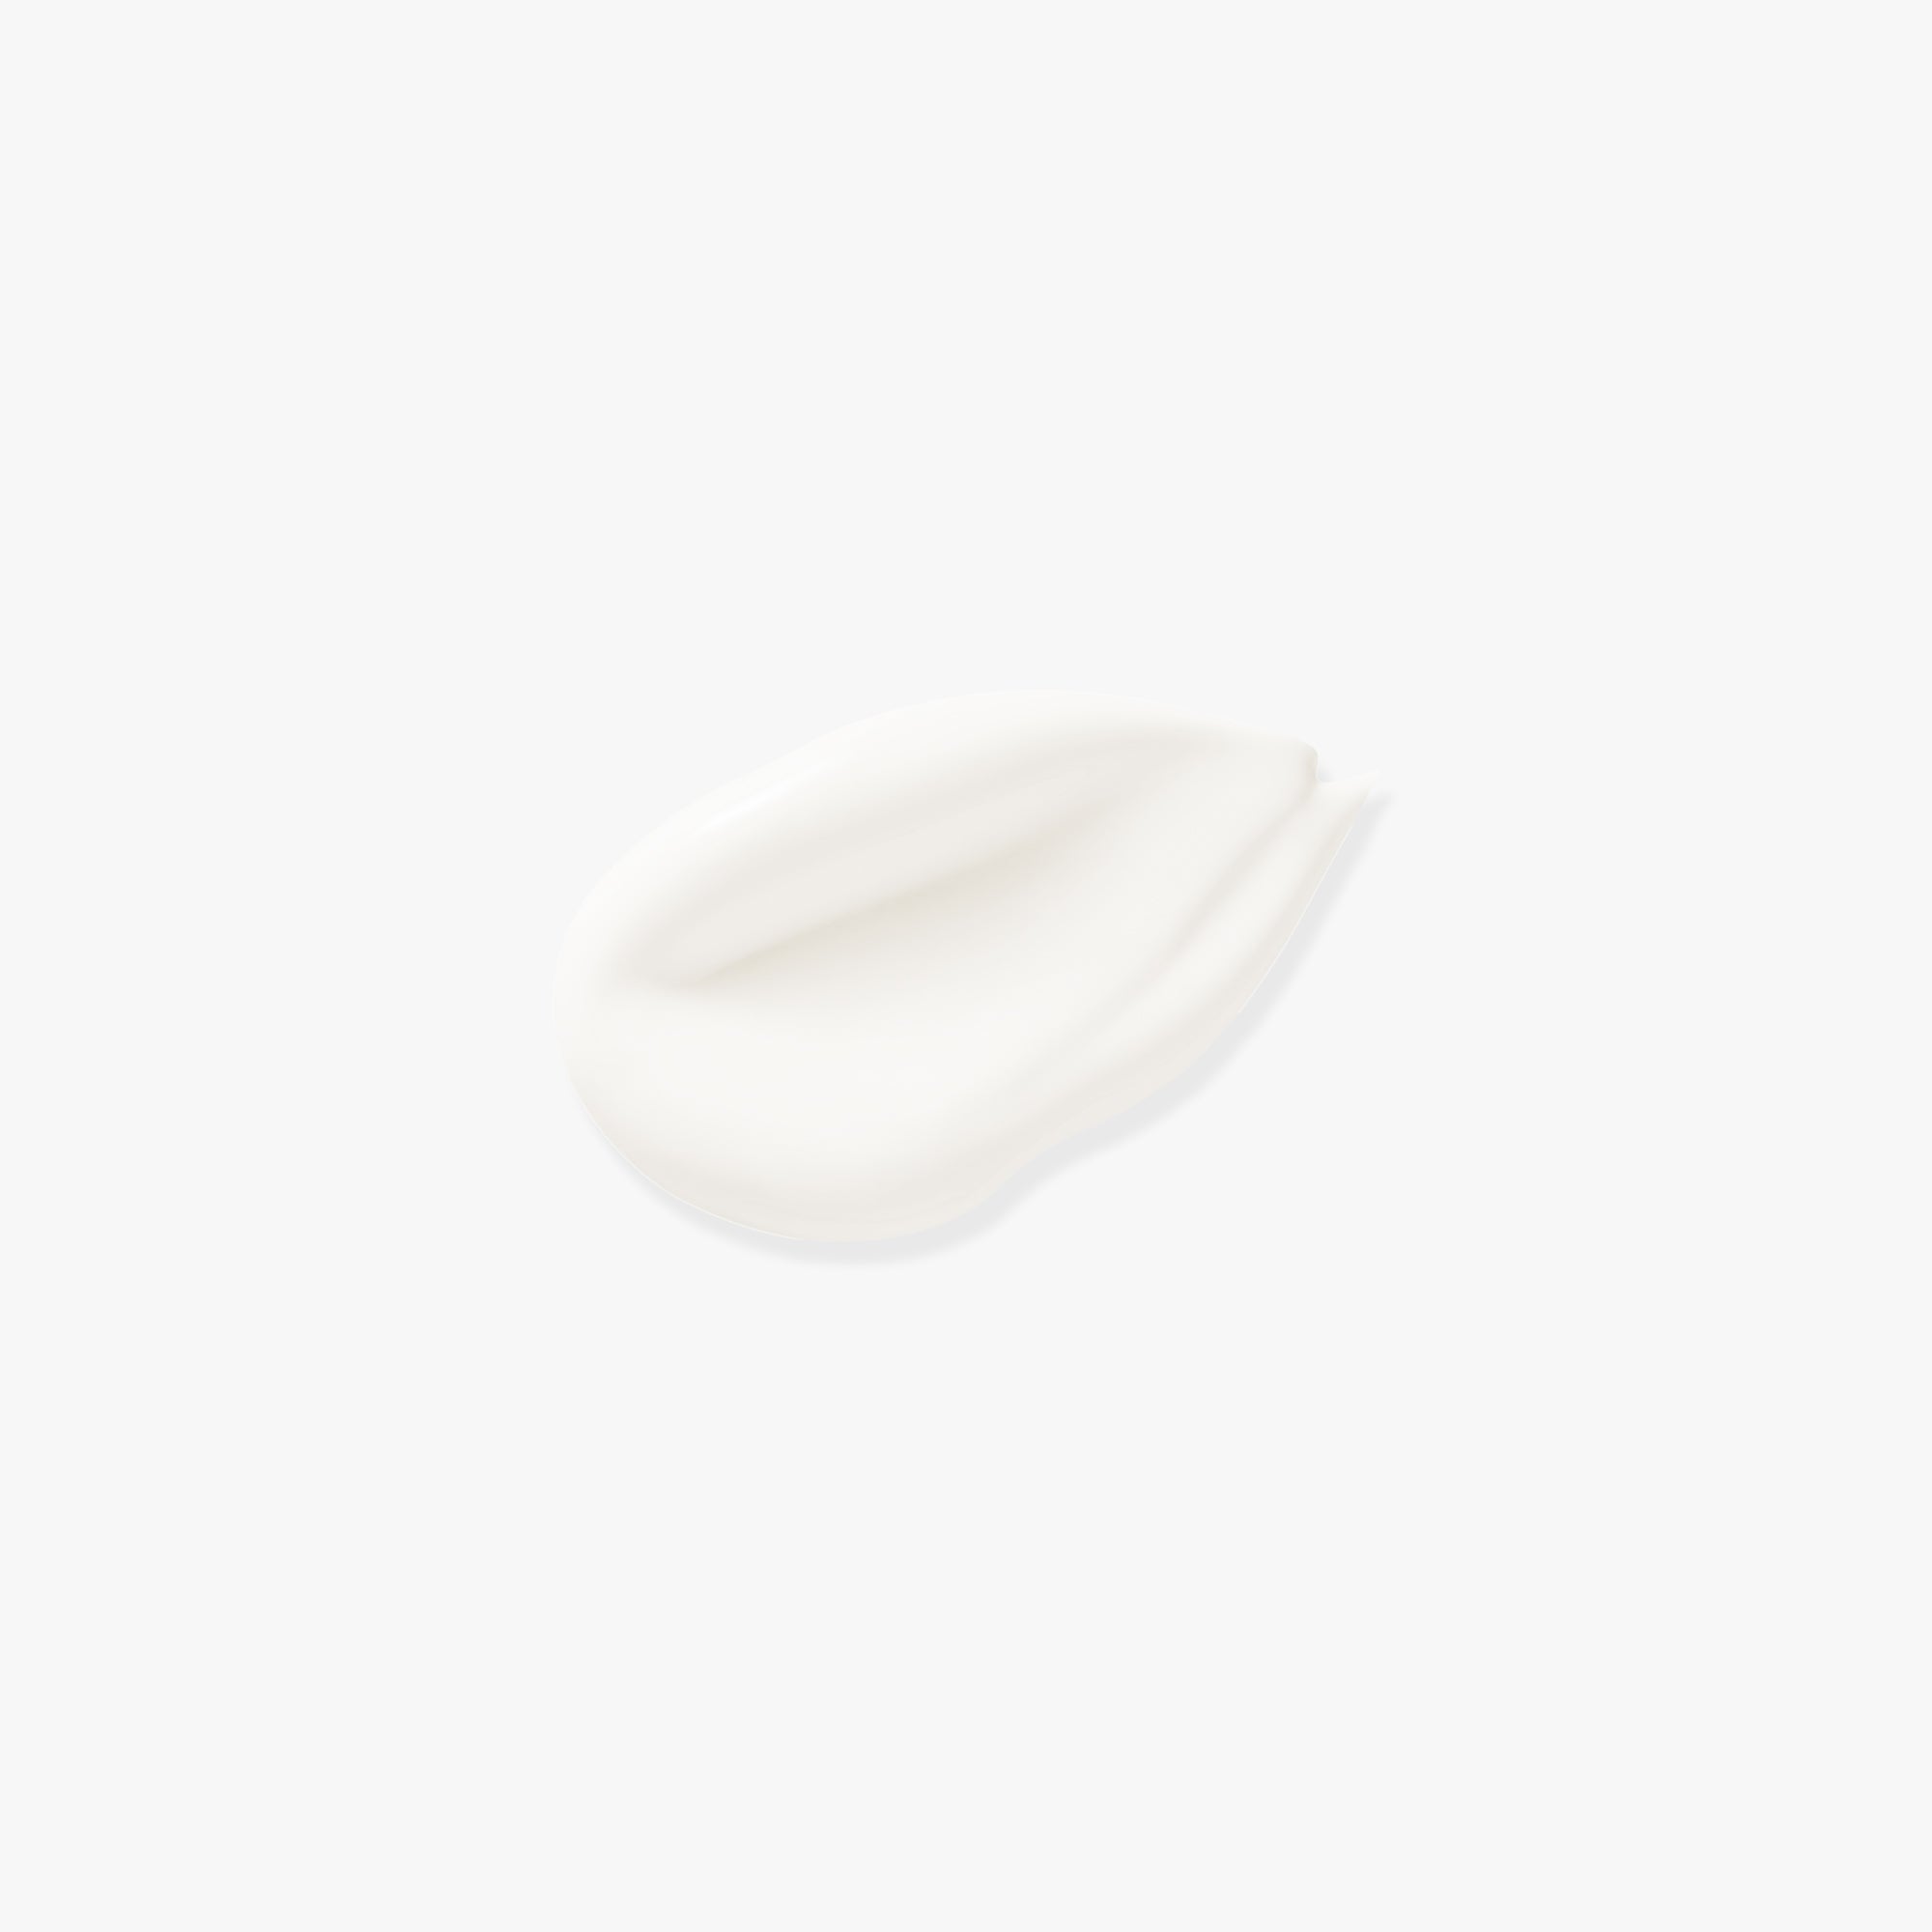 SkinCode Essentials, Brightening Day Cream SPF 15